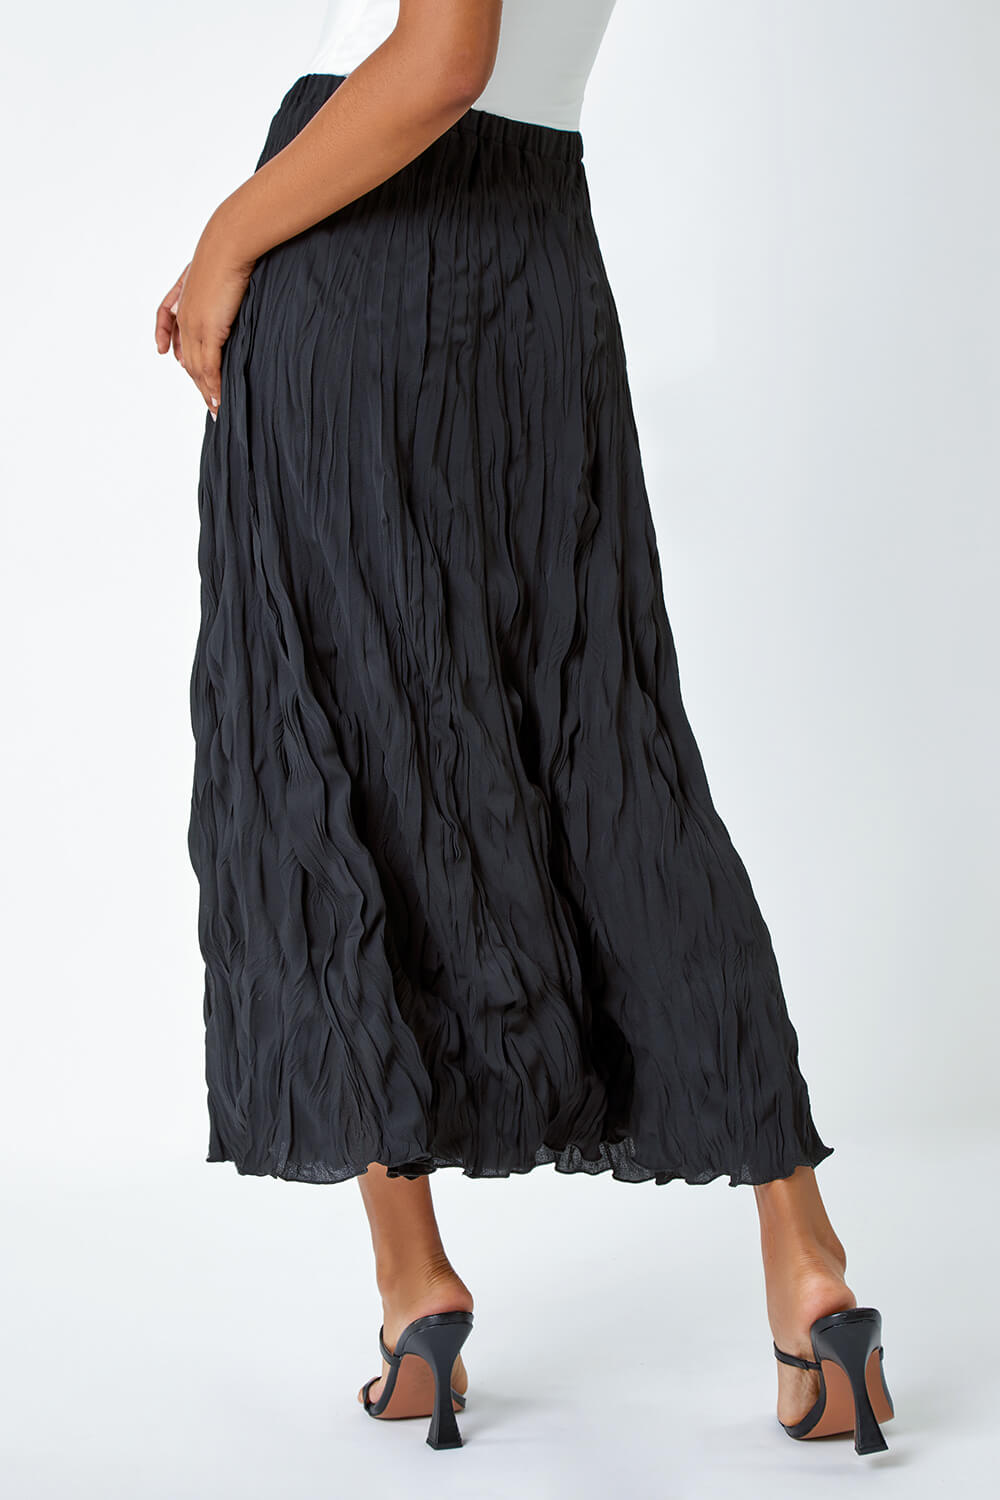 Black Textured Crinkle Midi Skirt, Image 2 of 5